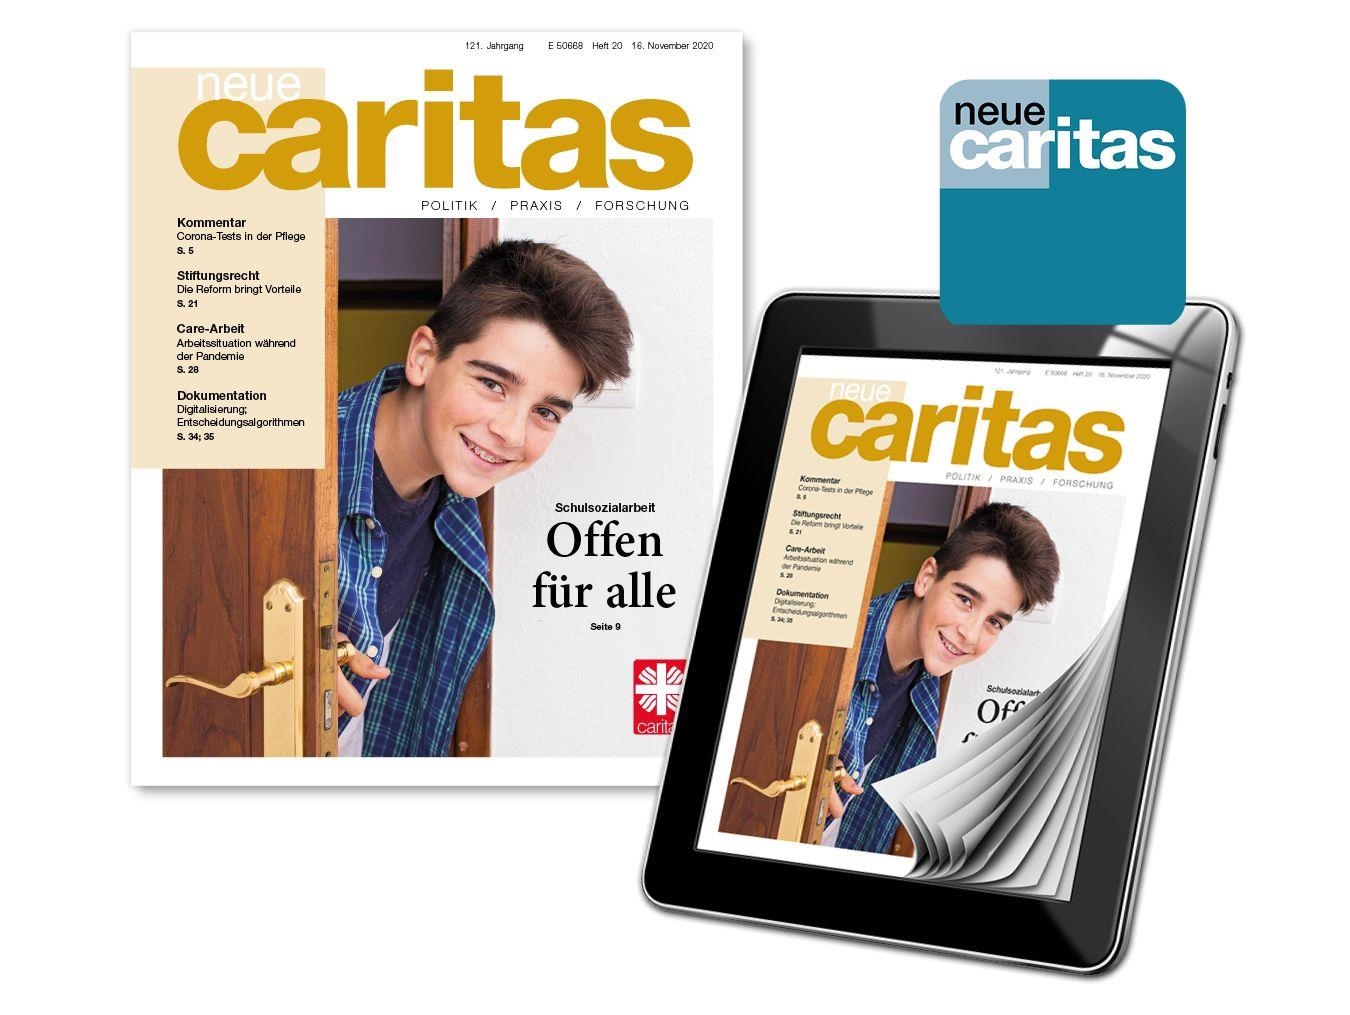 Abbildung des Magazins neue caritas als Heft und Onlineversion auf einen tablet.